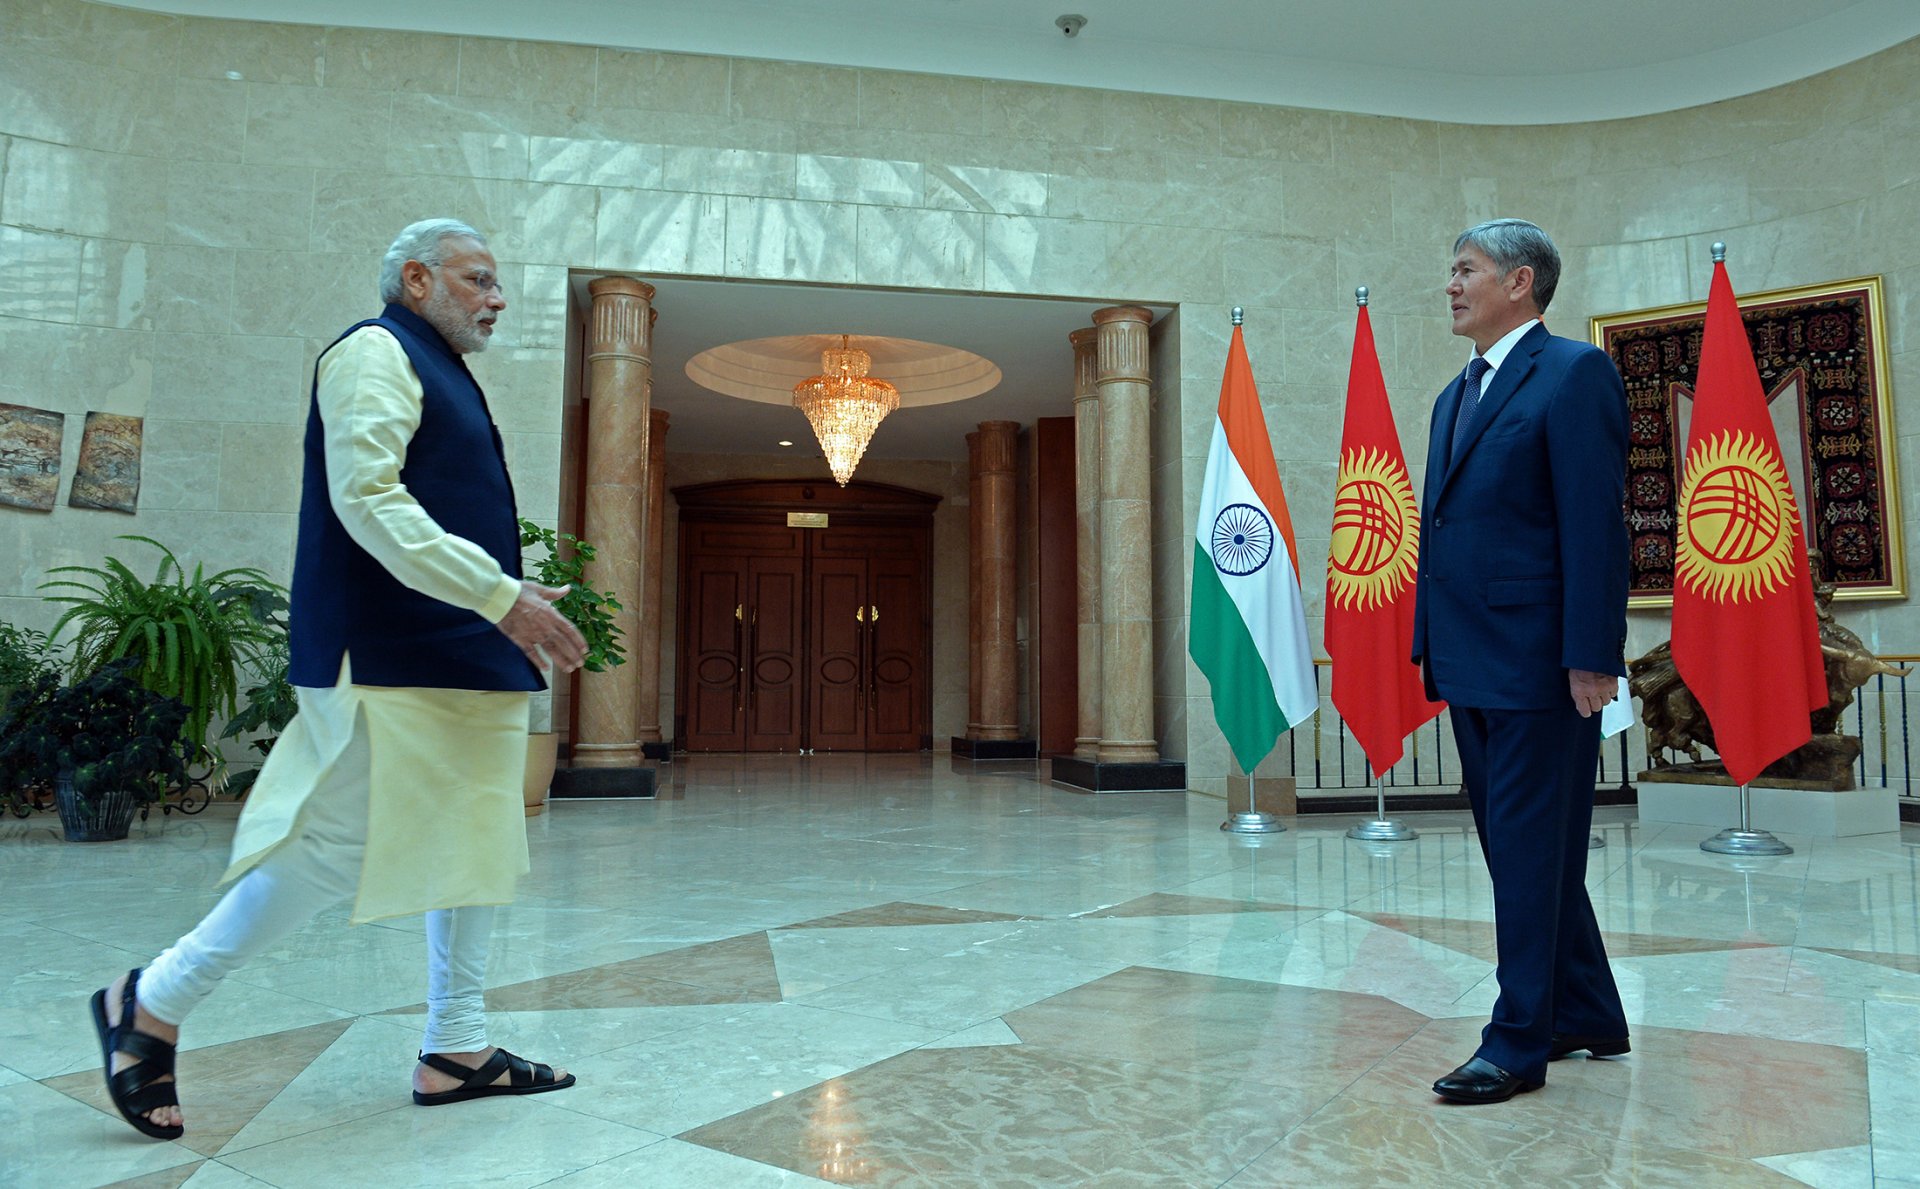 Встреча с премьер-министром Индии Нарендрой Моди, прибывшим в страну с официальным визитом (12 июля 2015 года, Государственная резиденция «Ала-Арча»)